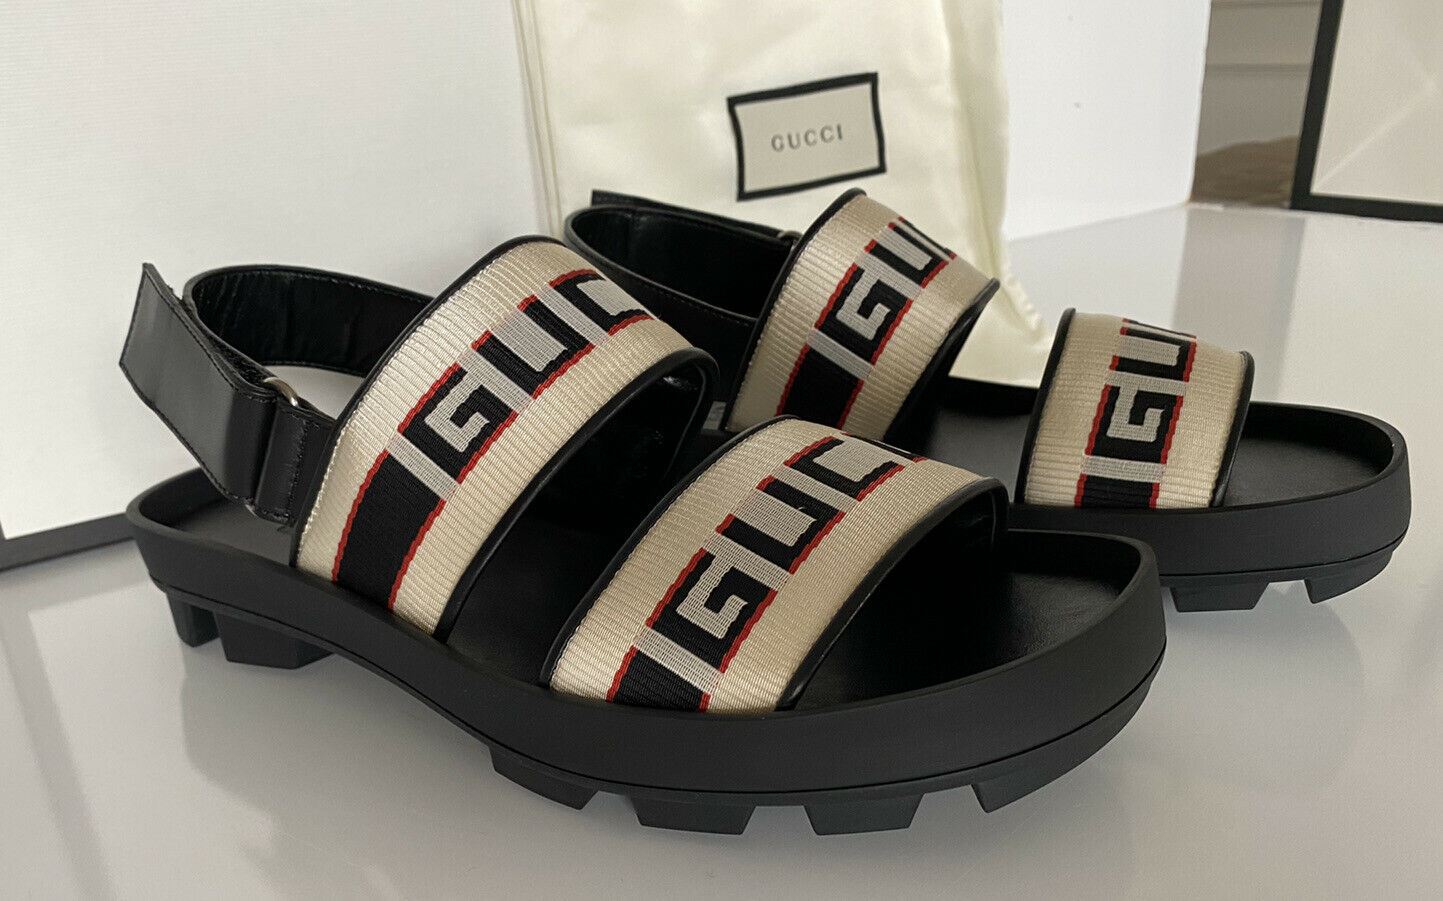 NIB Gucci Herren-Sandalen aus schwarzem/weißem Canvas/Leder, 8 US (Gucci 7,5), Italien 523769 